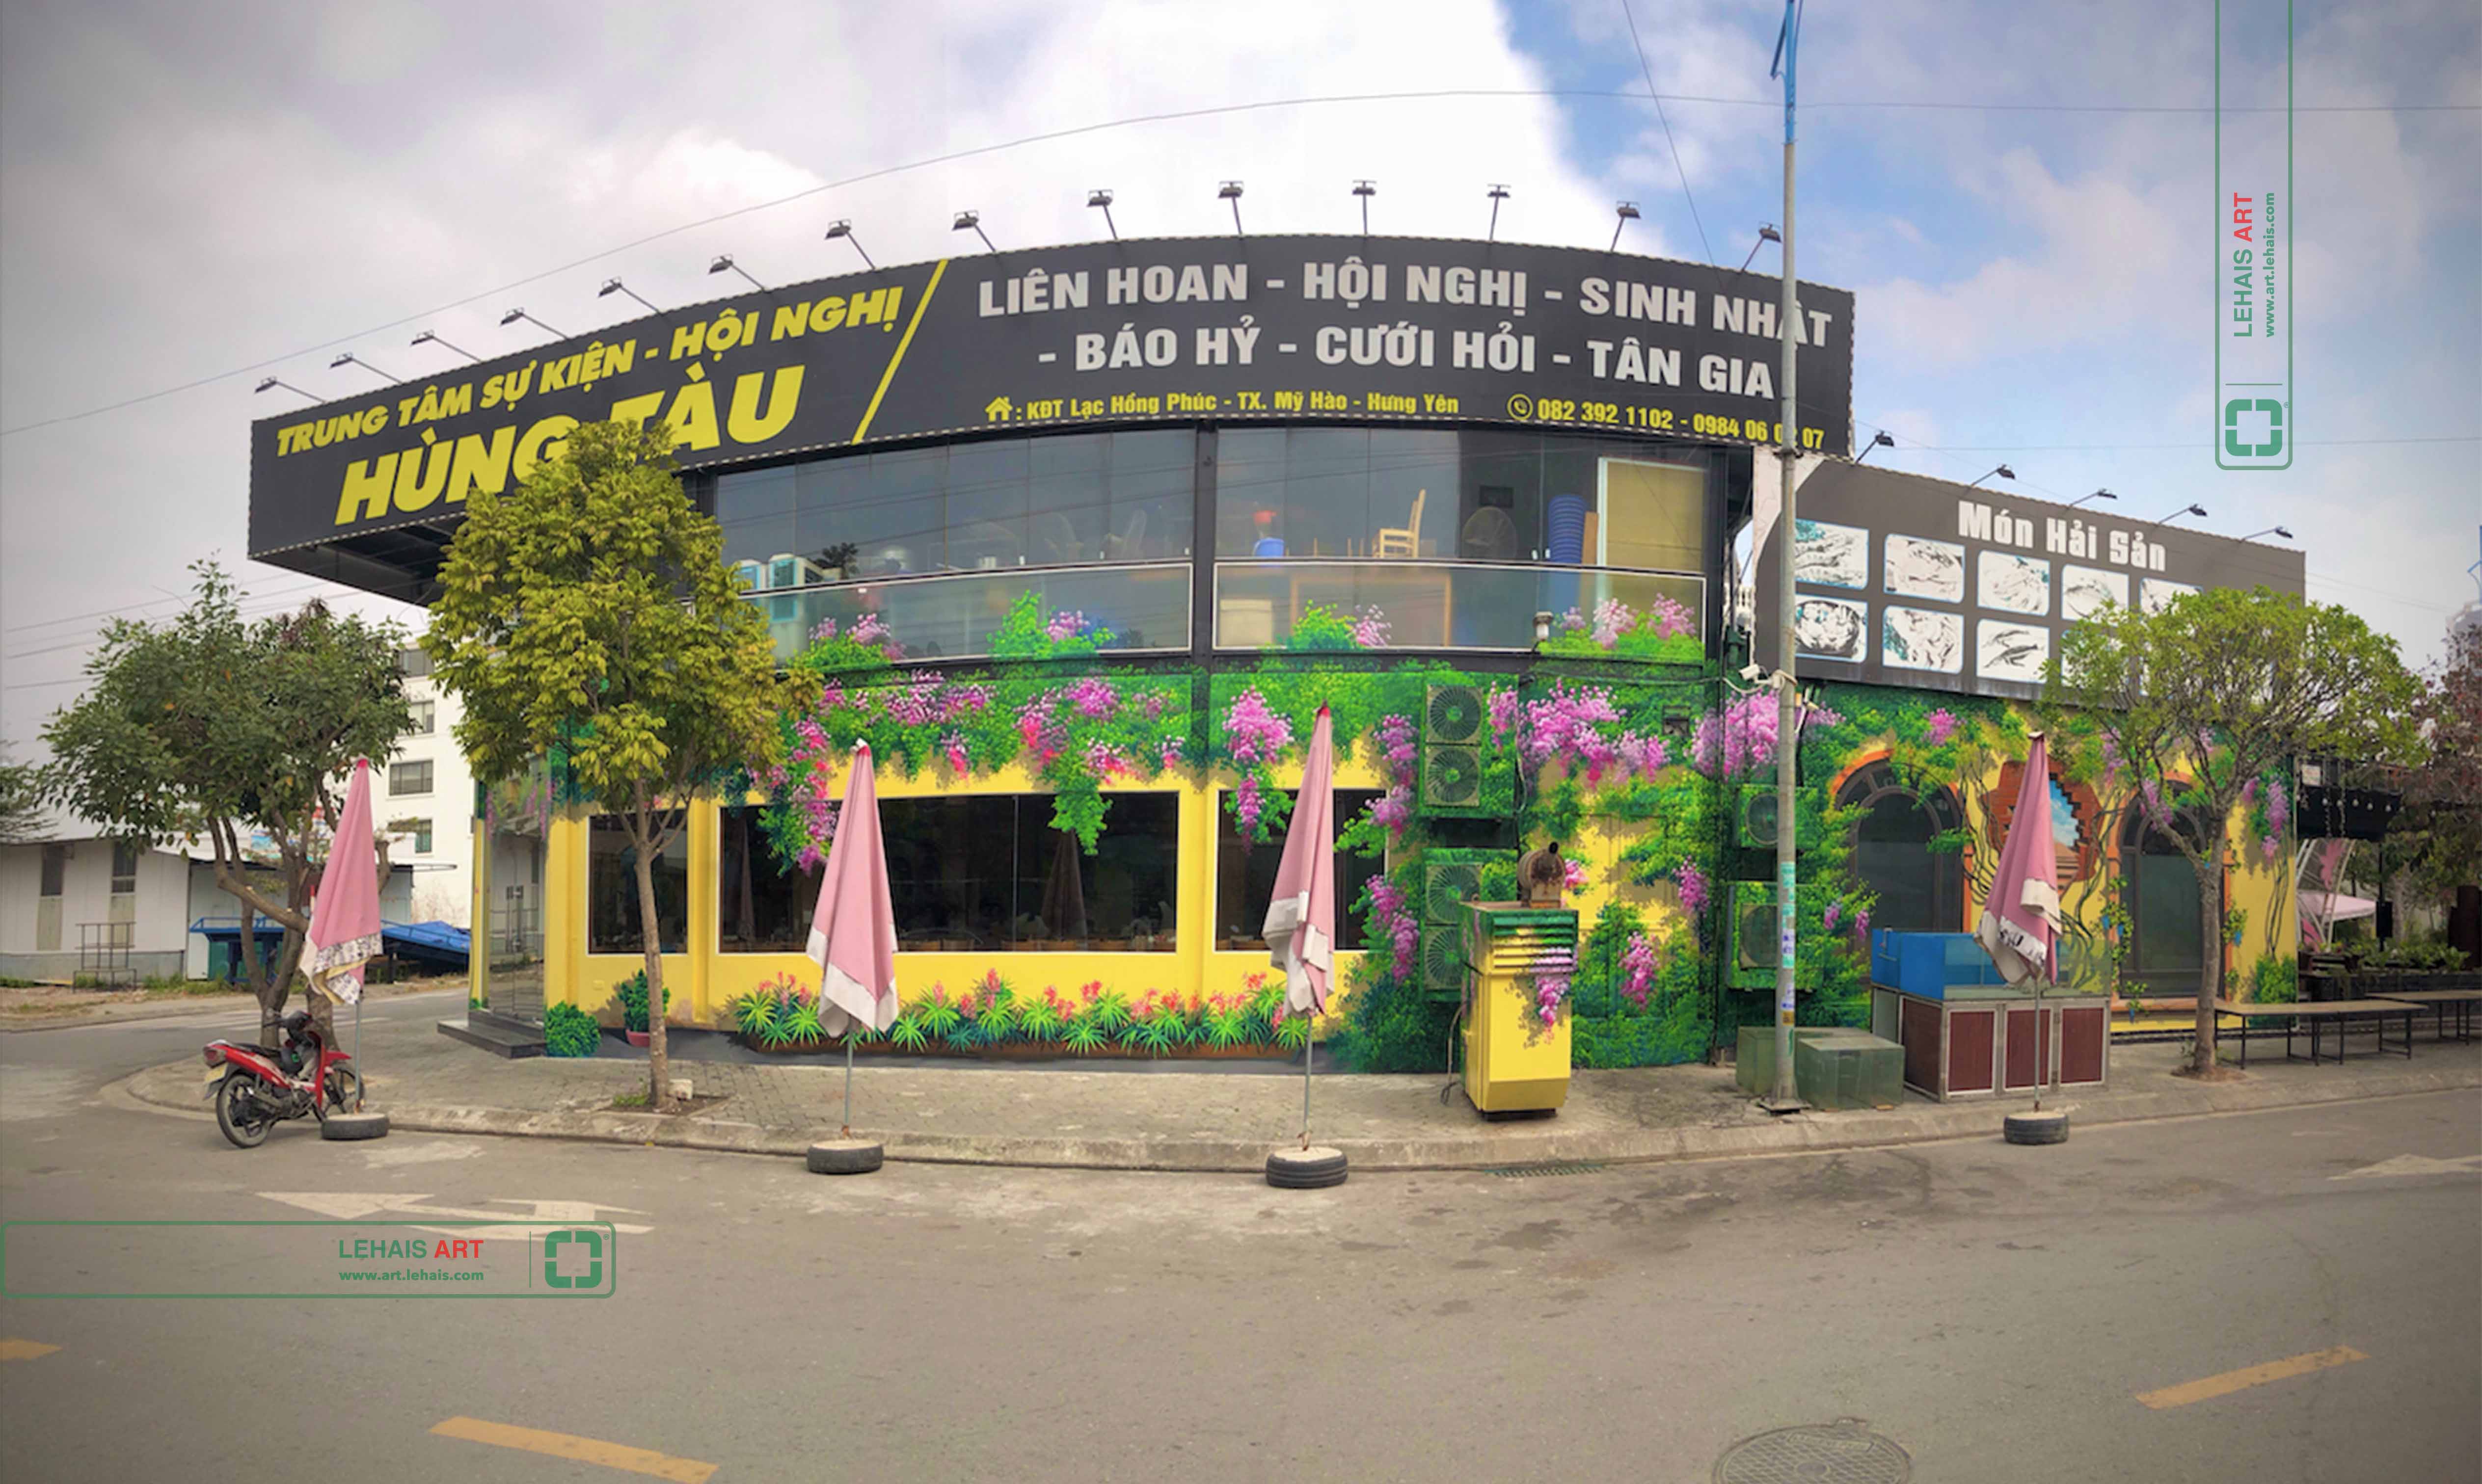 Vẽ tranh 3D trang trí tường tại nhà Hàng Hùng Tàu ở Phố Nối, Hưng Yên - TT198LHAR 9